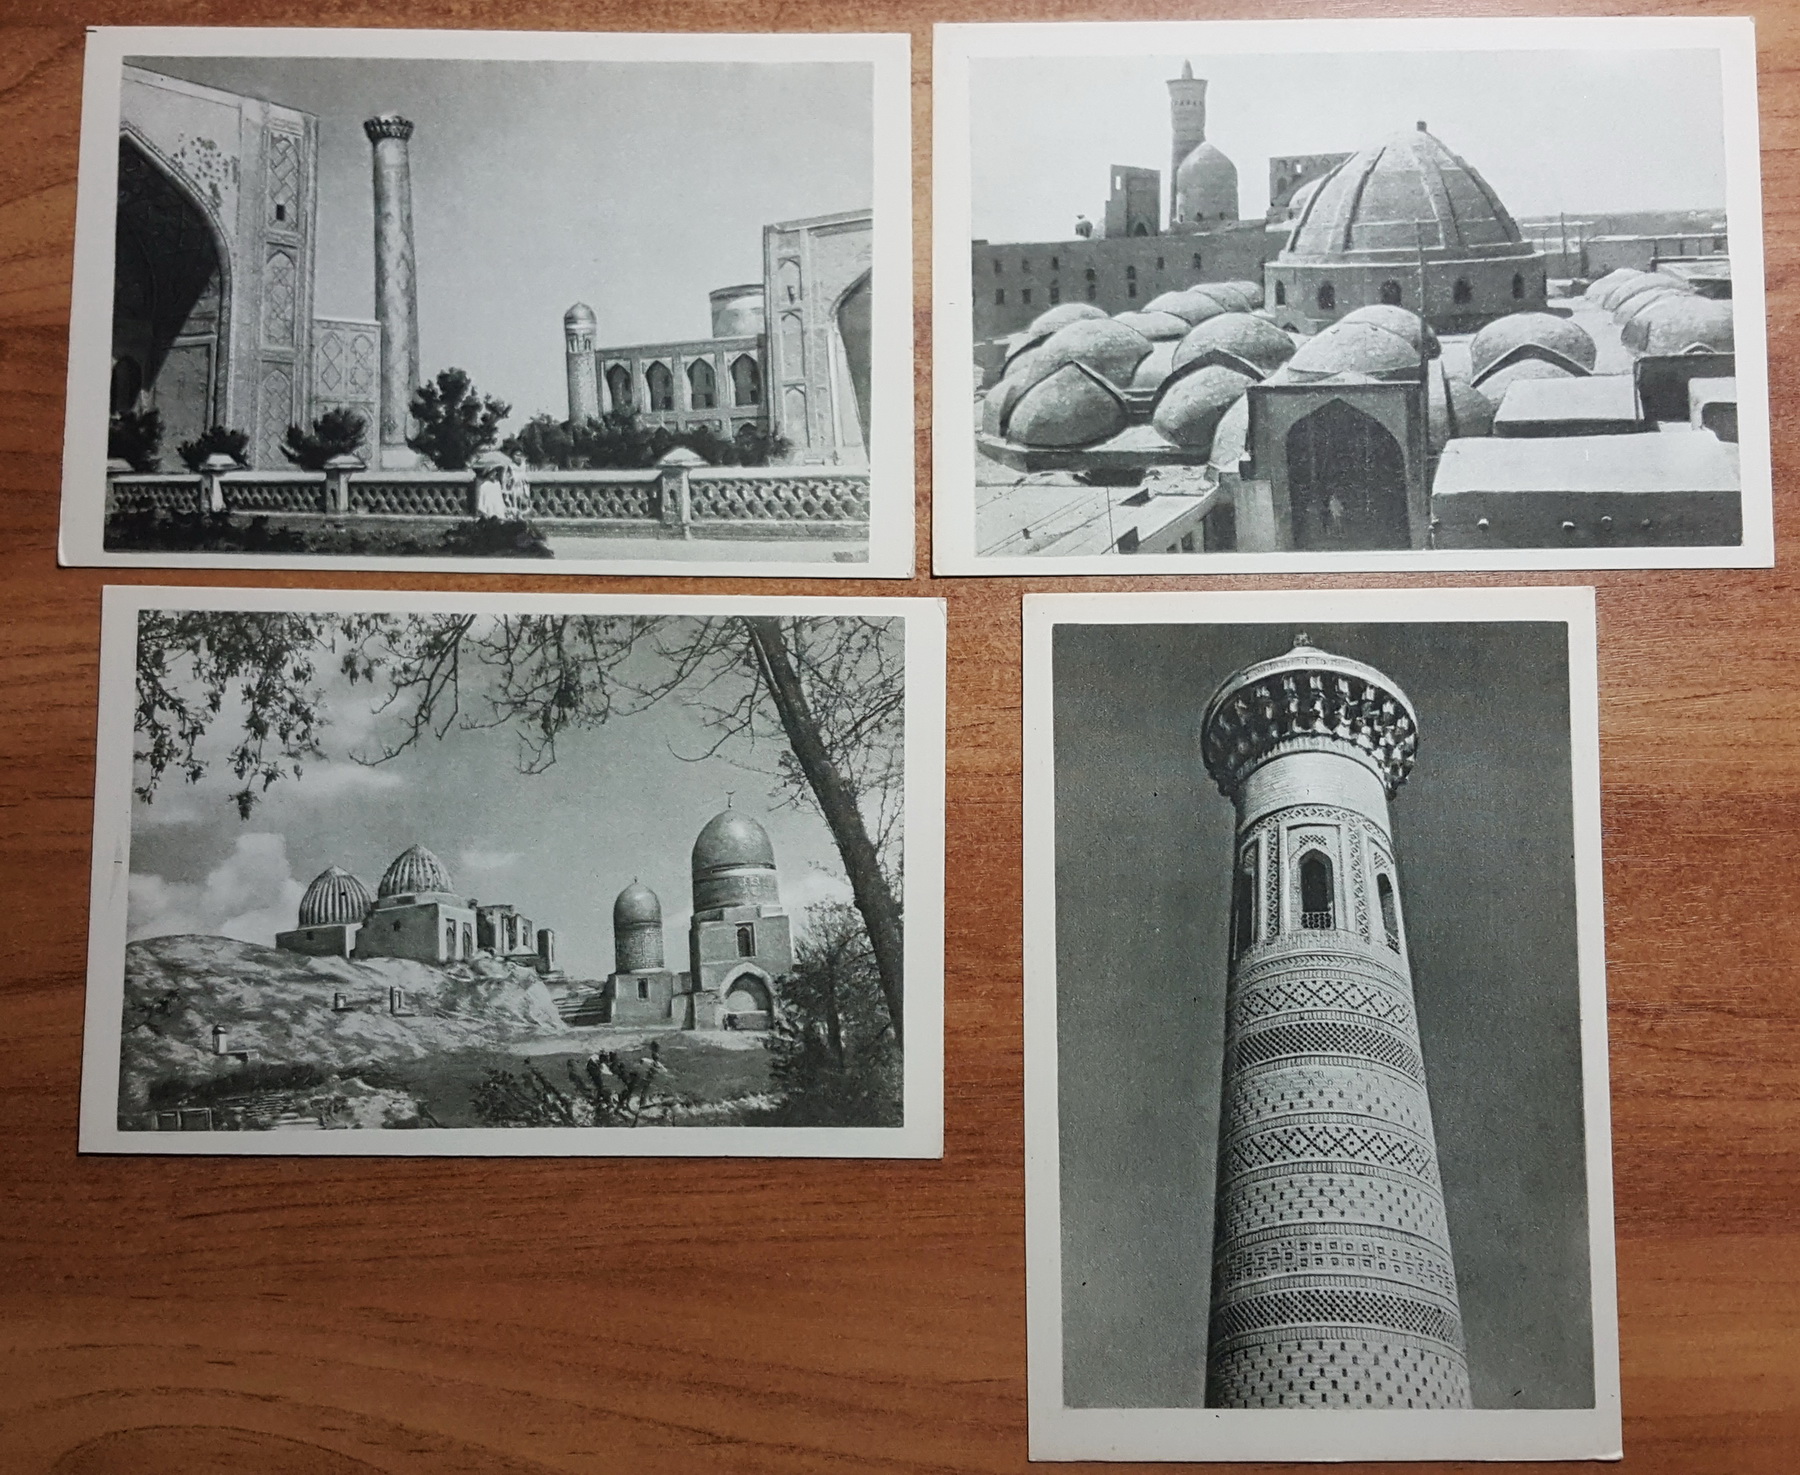 Узбекистан открытки . Продаются различные предметы антиквариата и старины из частной коллекции. Ульяновск 8 905 349 8210